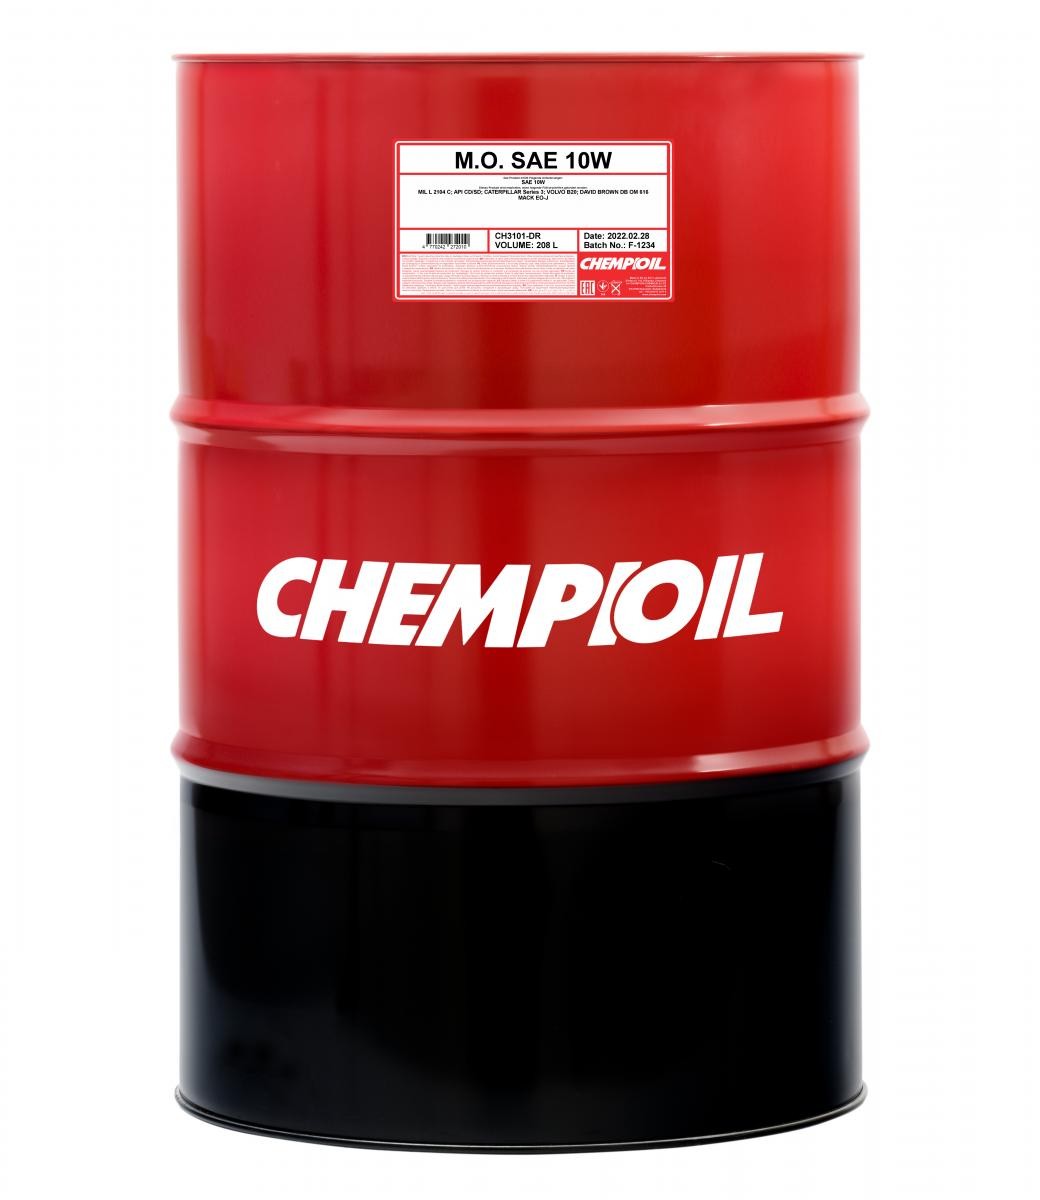 Automobile oil 10W longlife petrol - CH3101-DR CHEMPIOIL M.O., SAE 10W